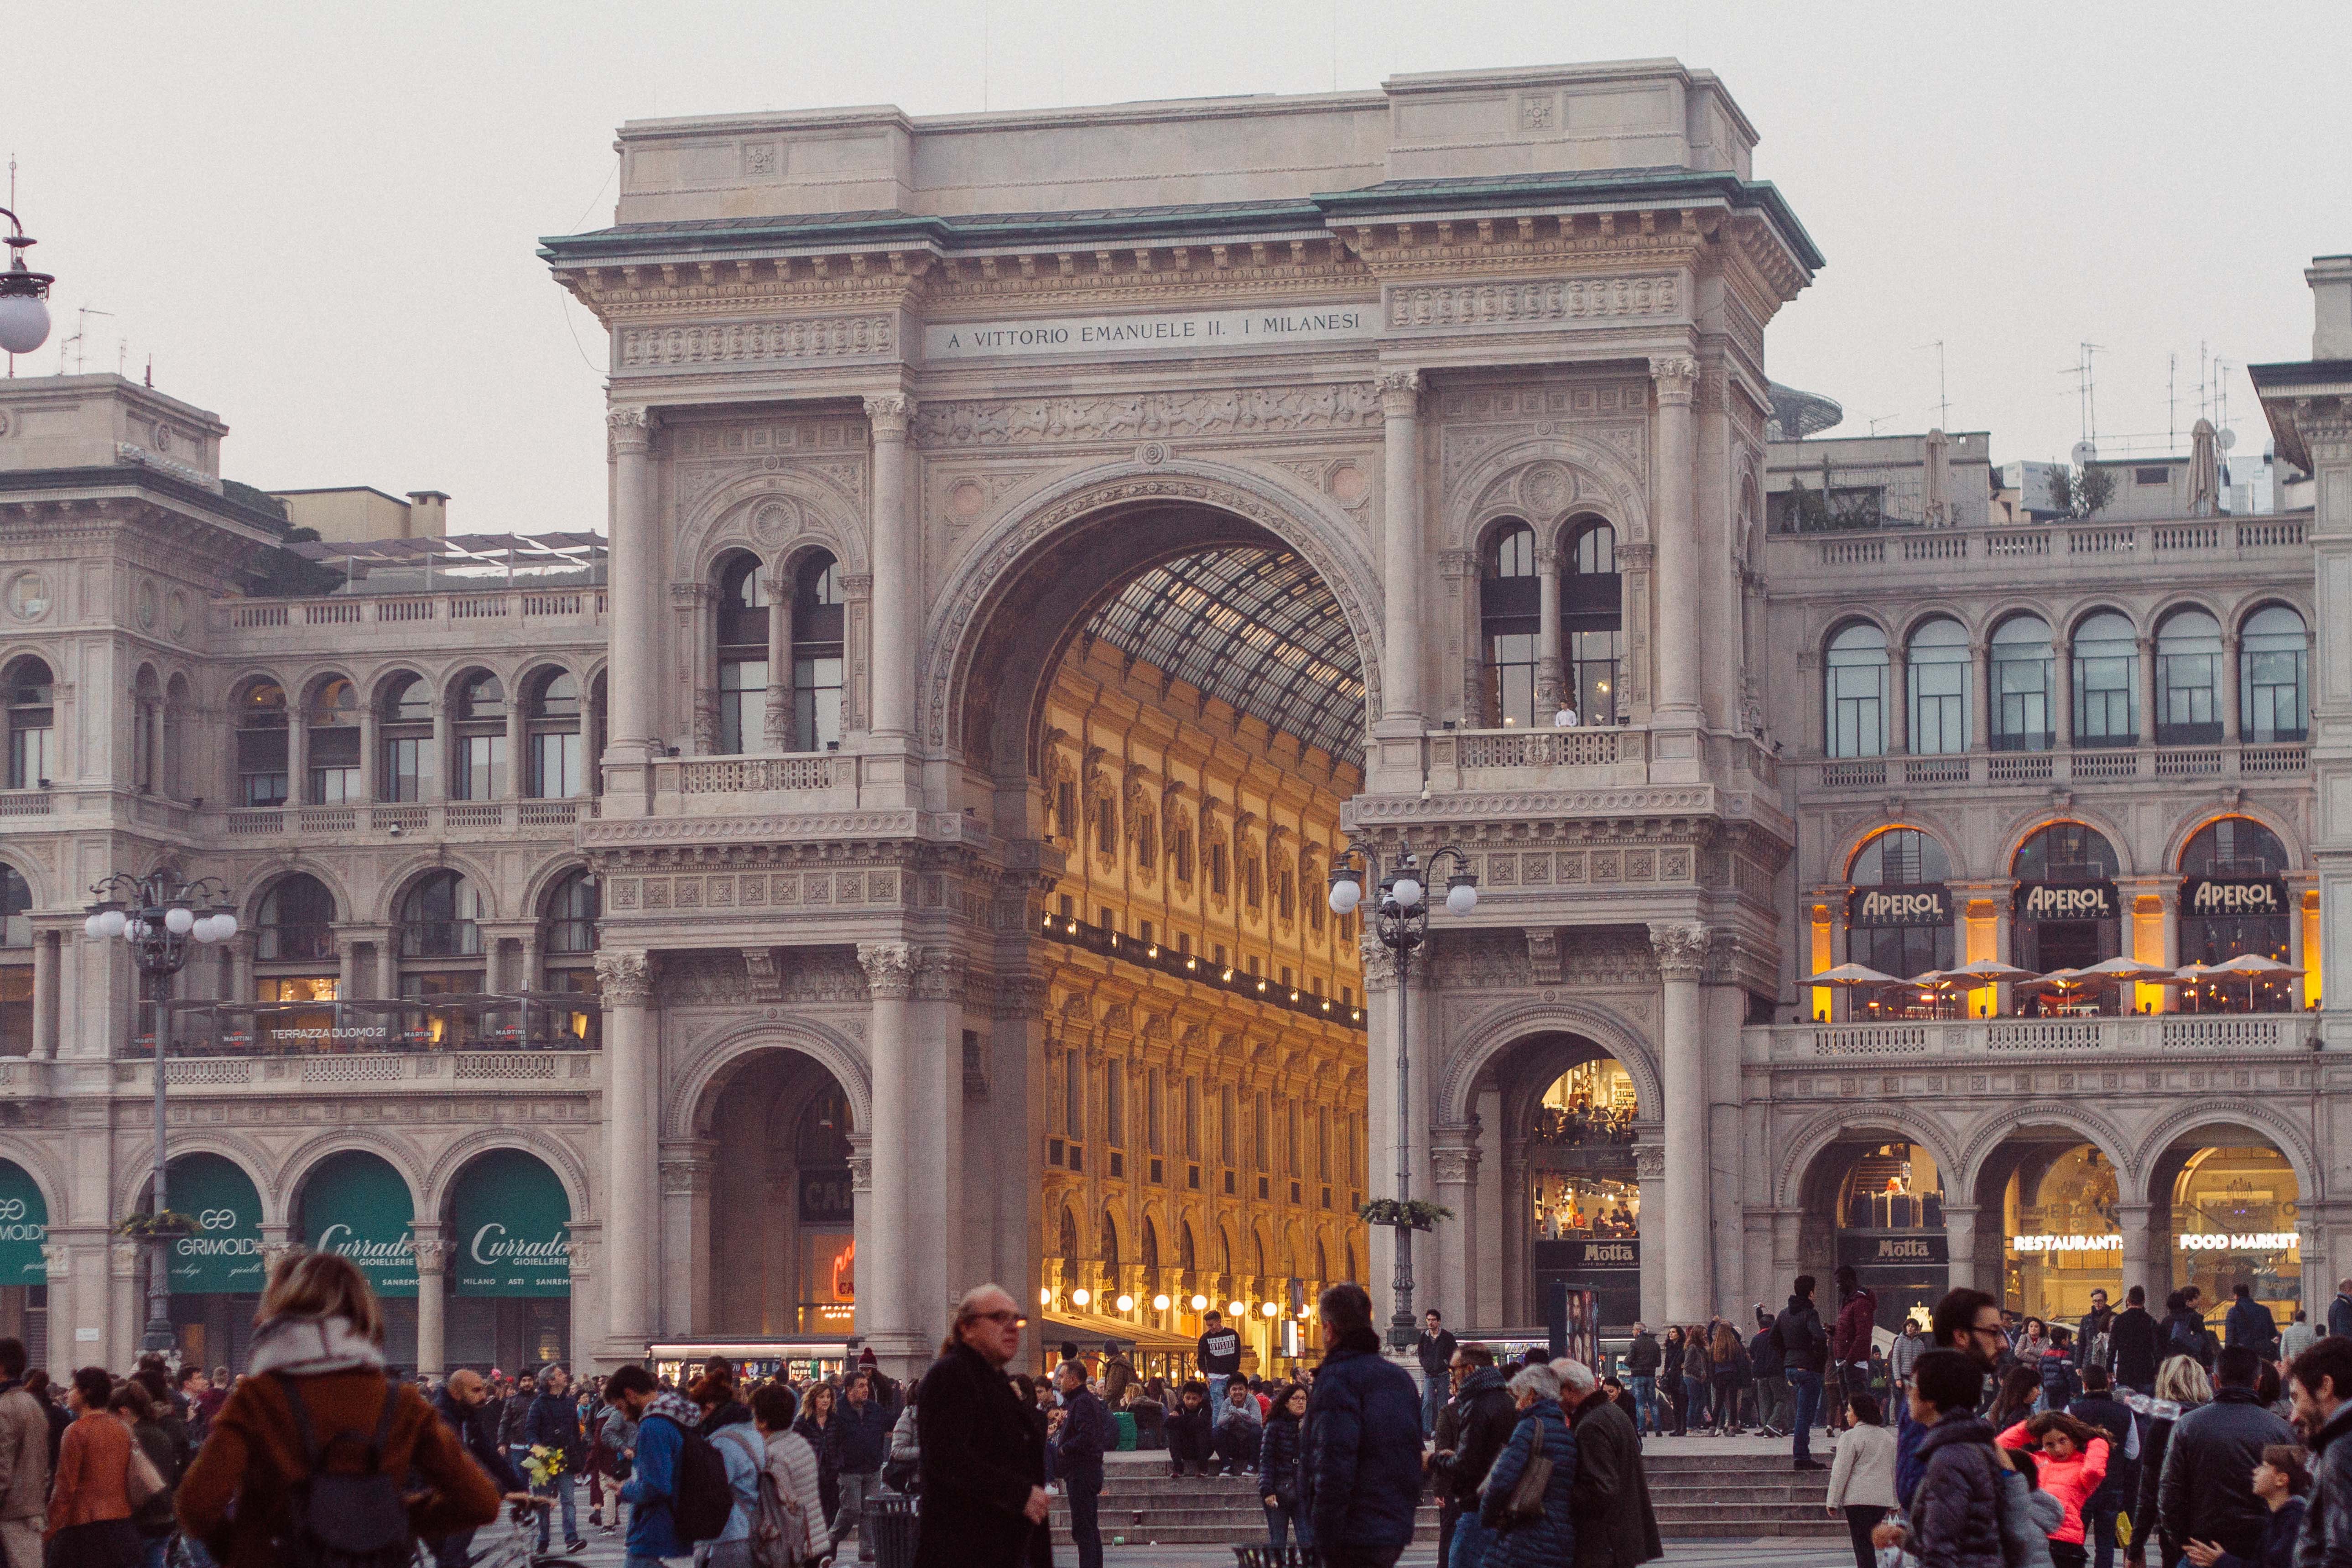 Fachada da Galleria Vitório Emanuele II, um dos principais pontos turísticos de Milão (Foto: Riccardo Bresciani)